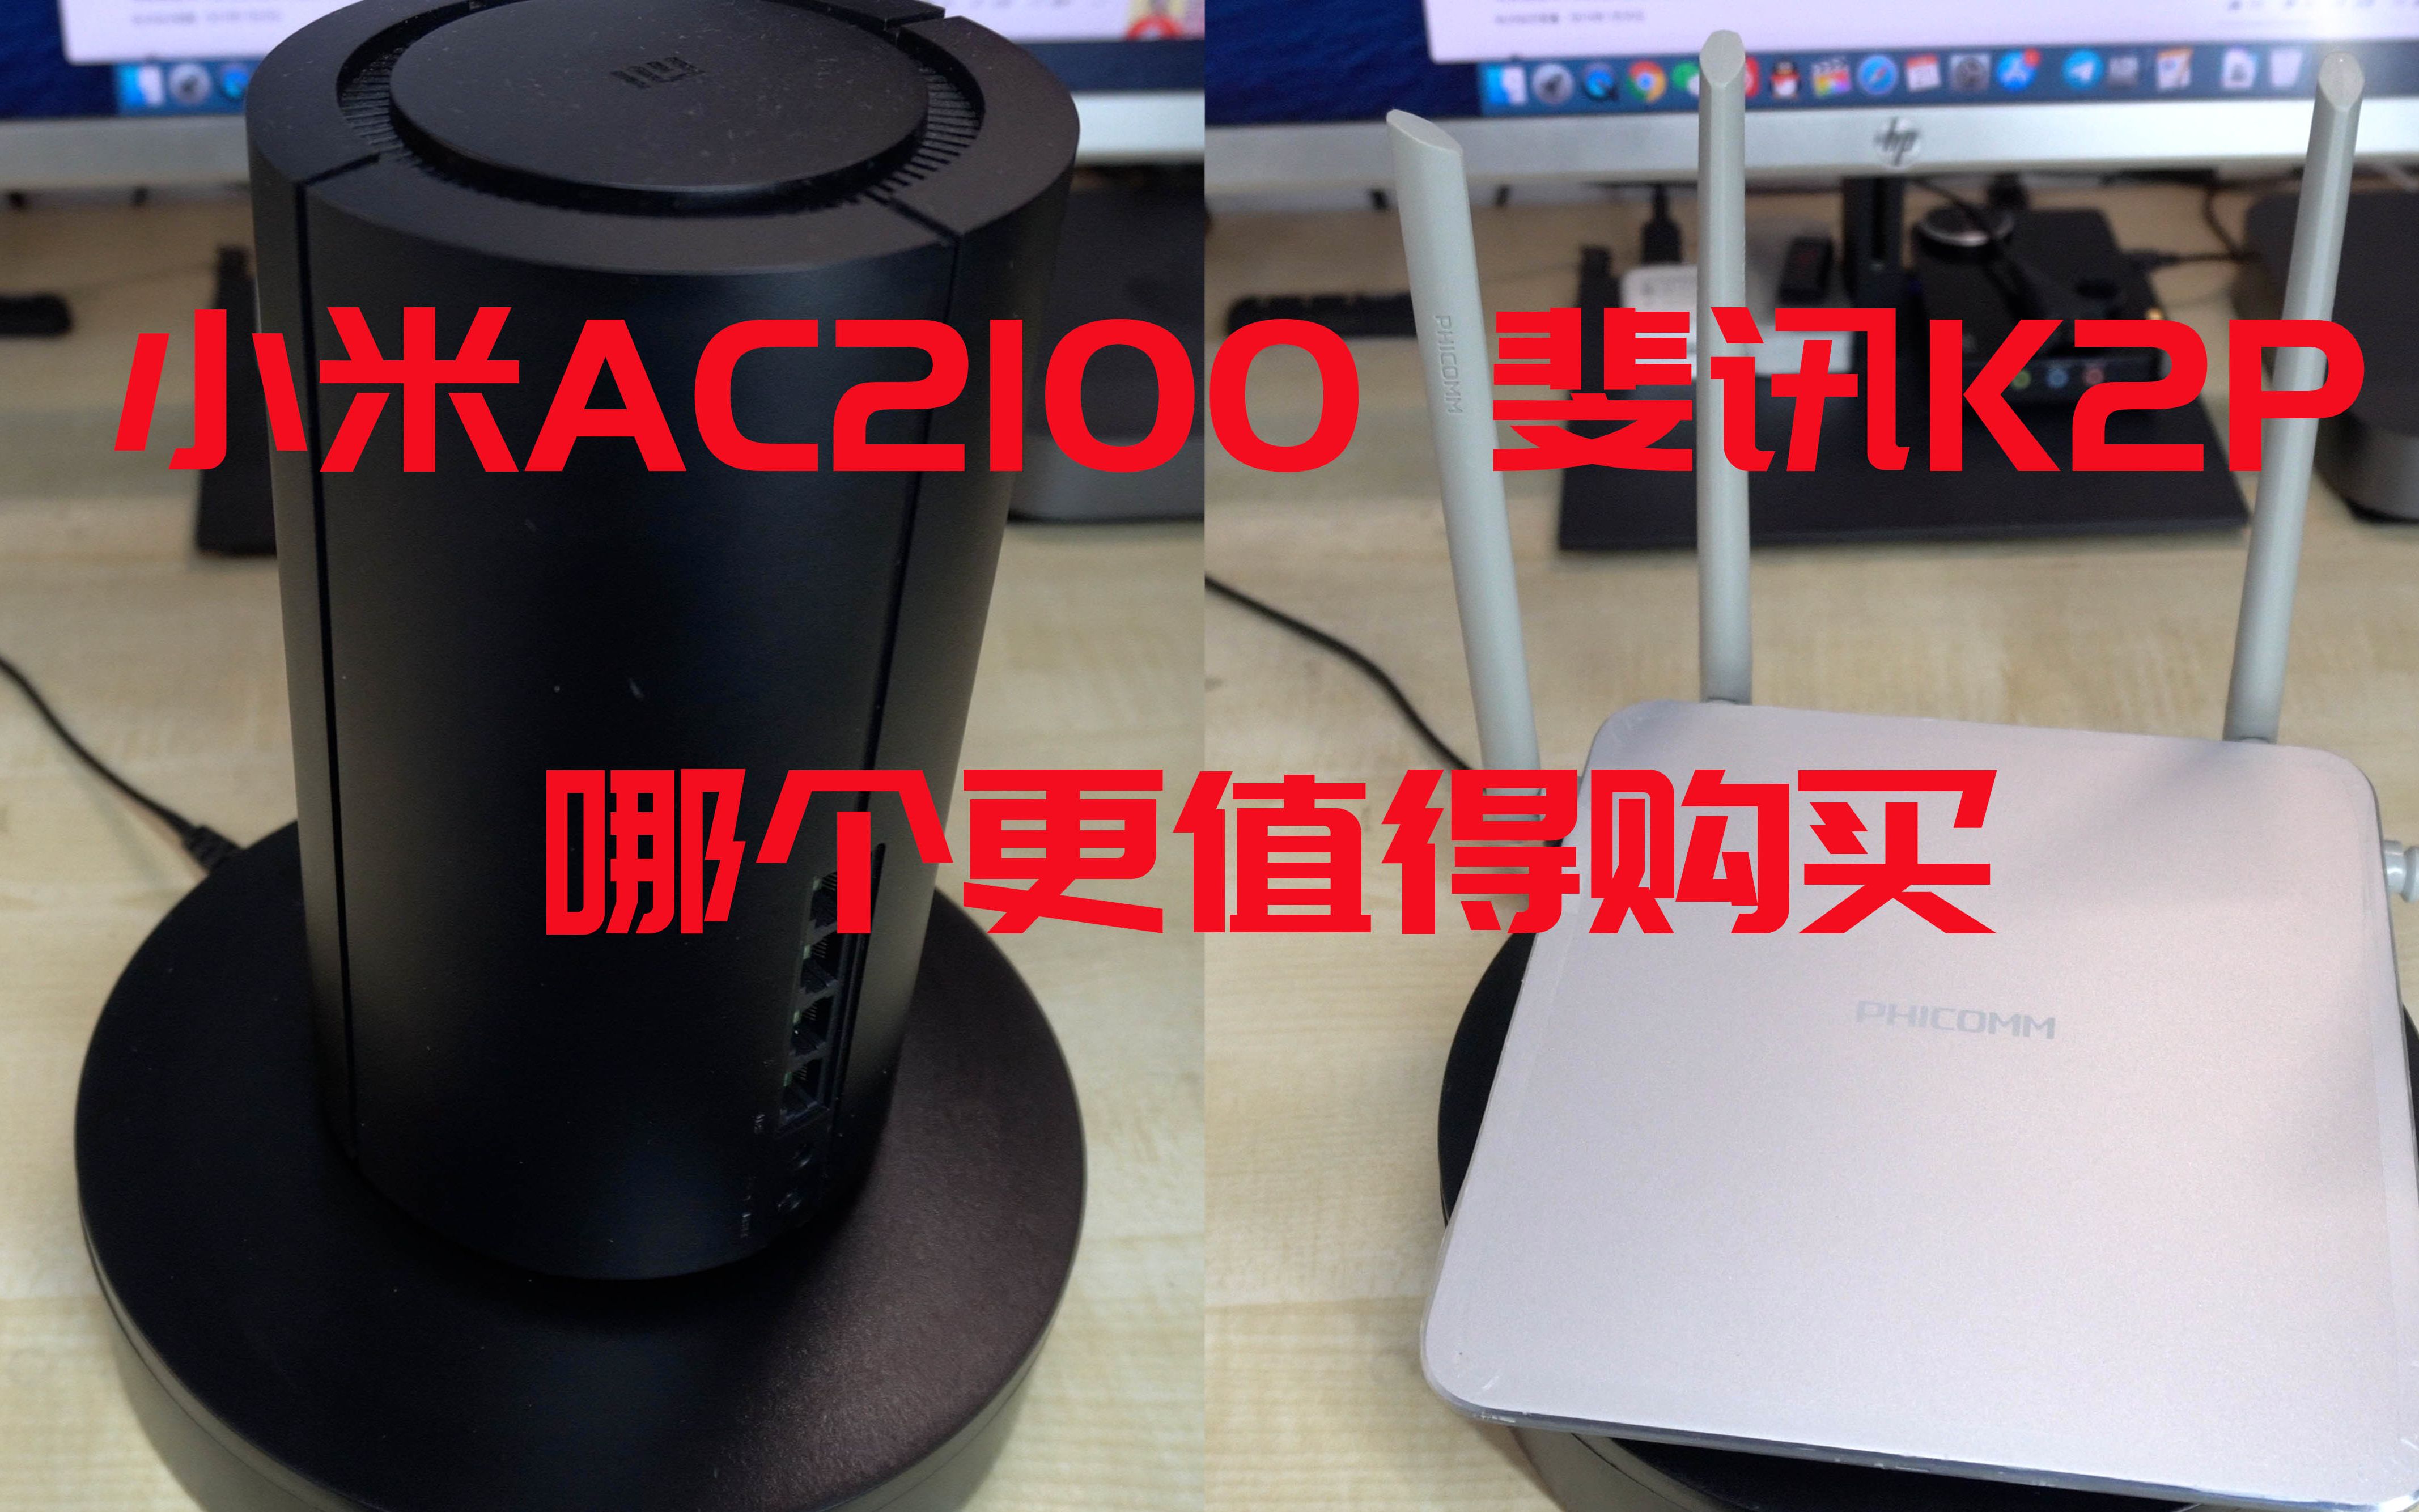 斐讯K2P 小米AC2100哪个更值得购买呢？